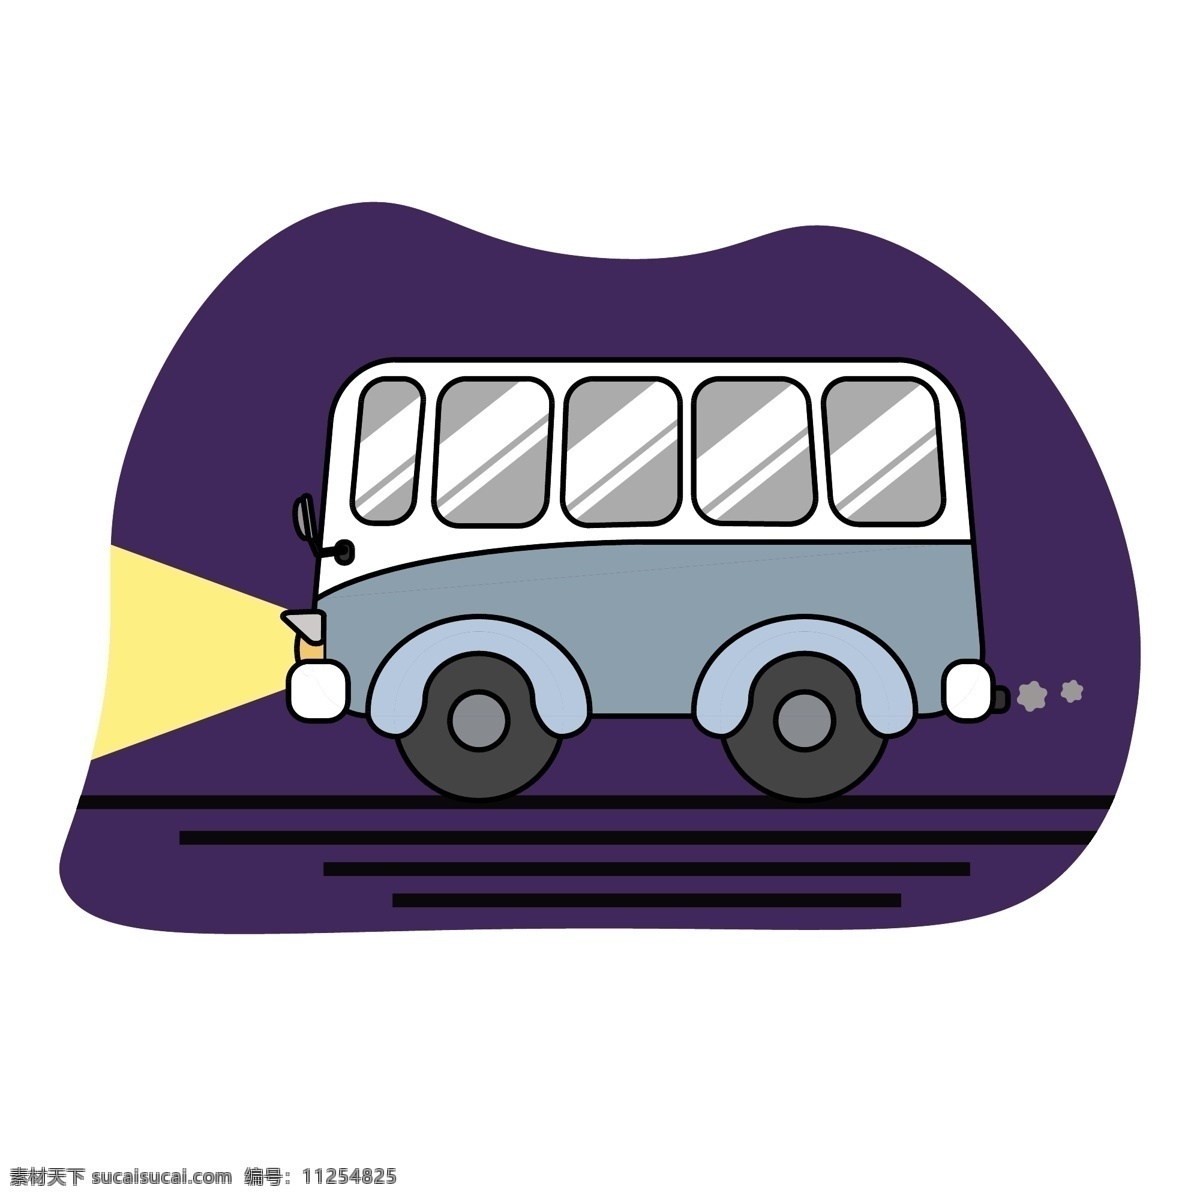 交通工具 小 巴士 吃 鸡 道具 卡通 图标 交通 小巴 吃鸡元素